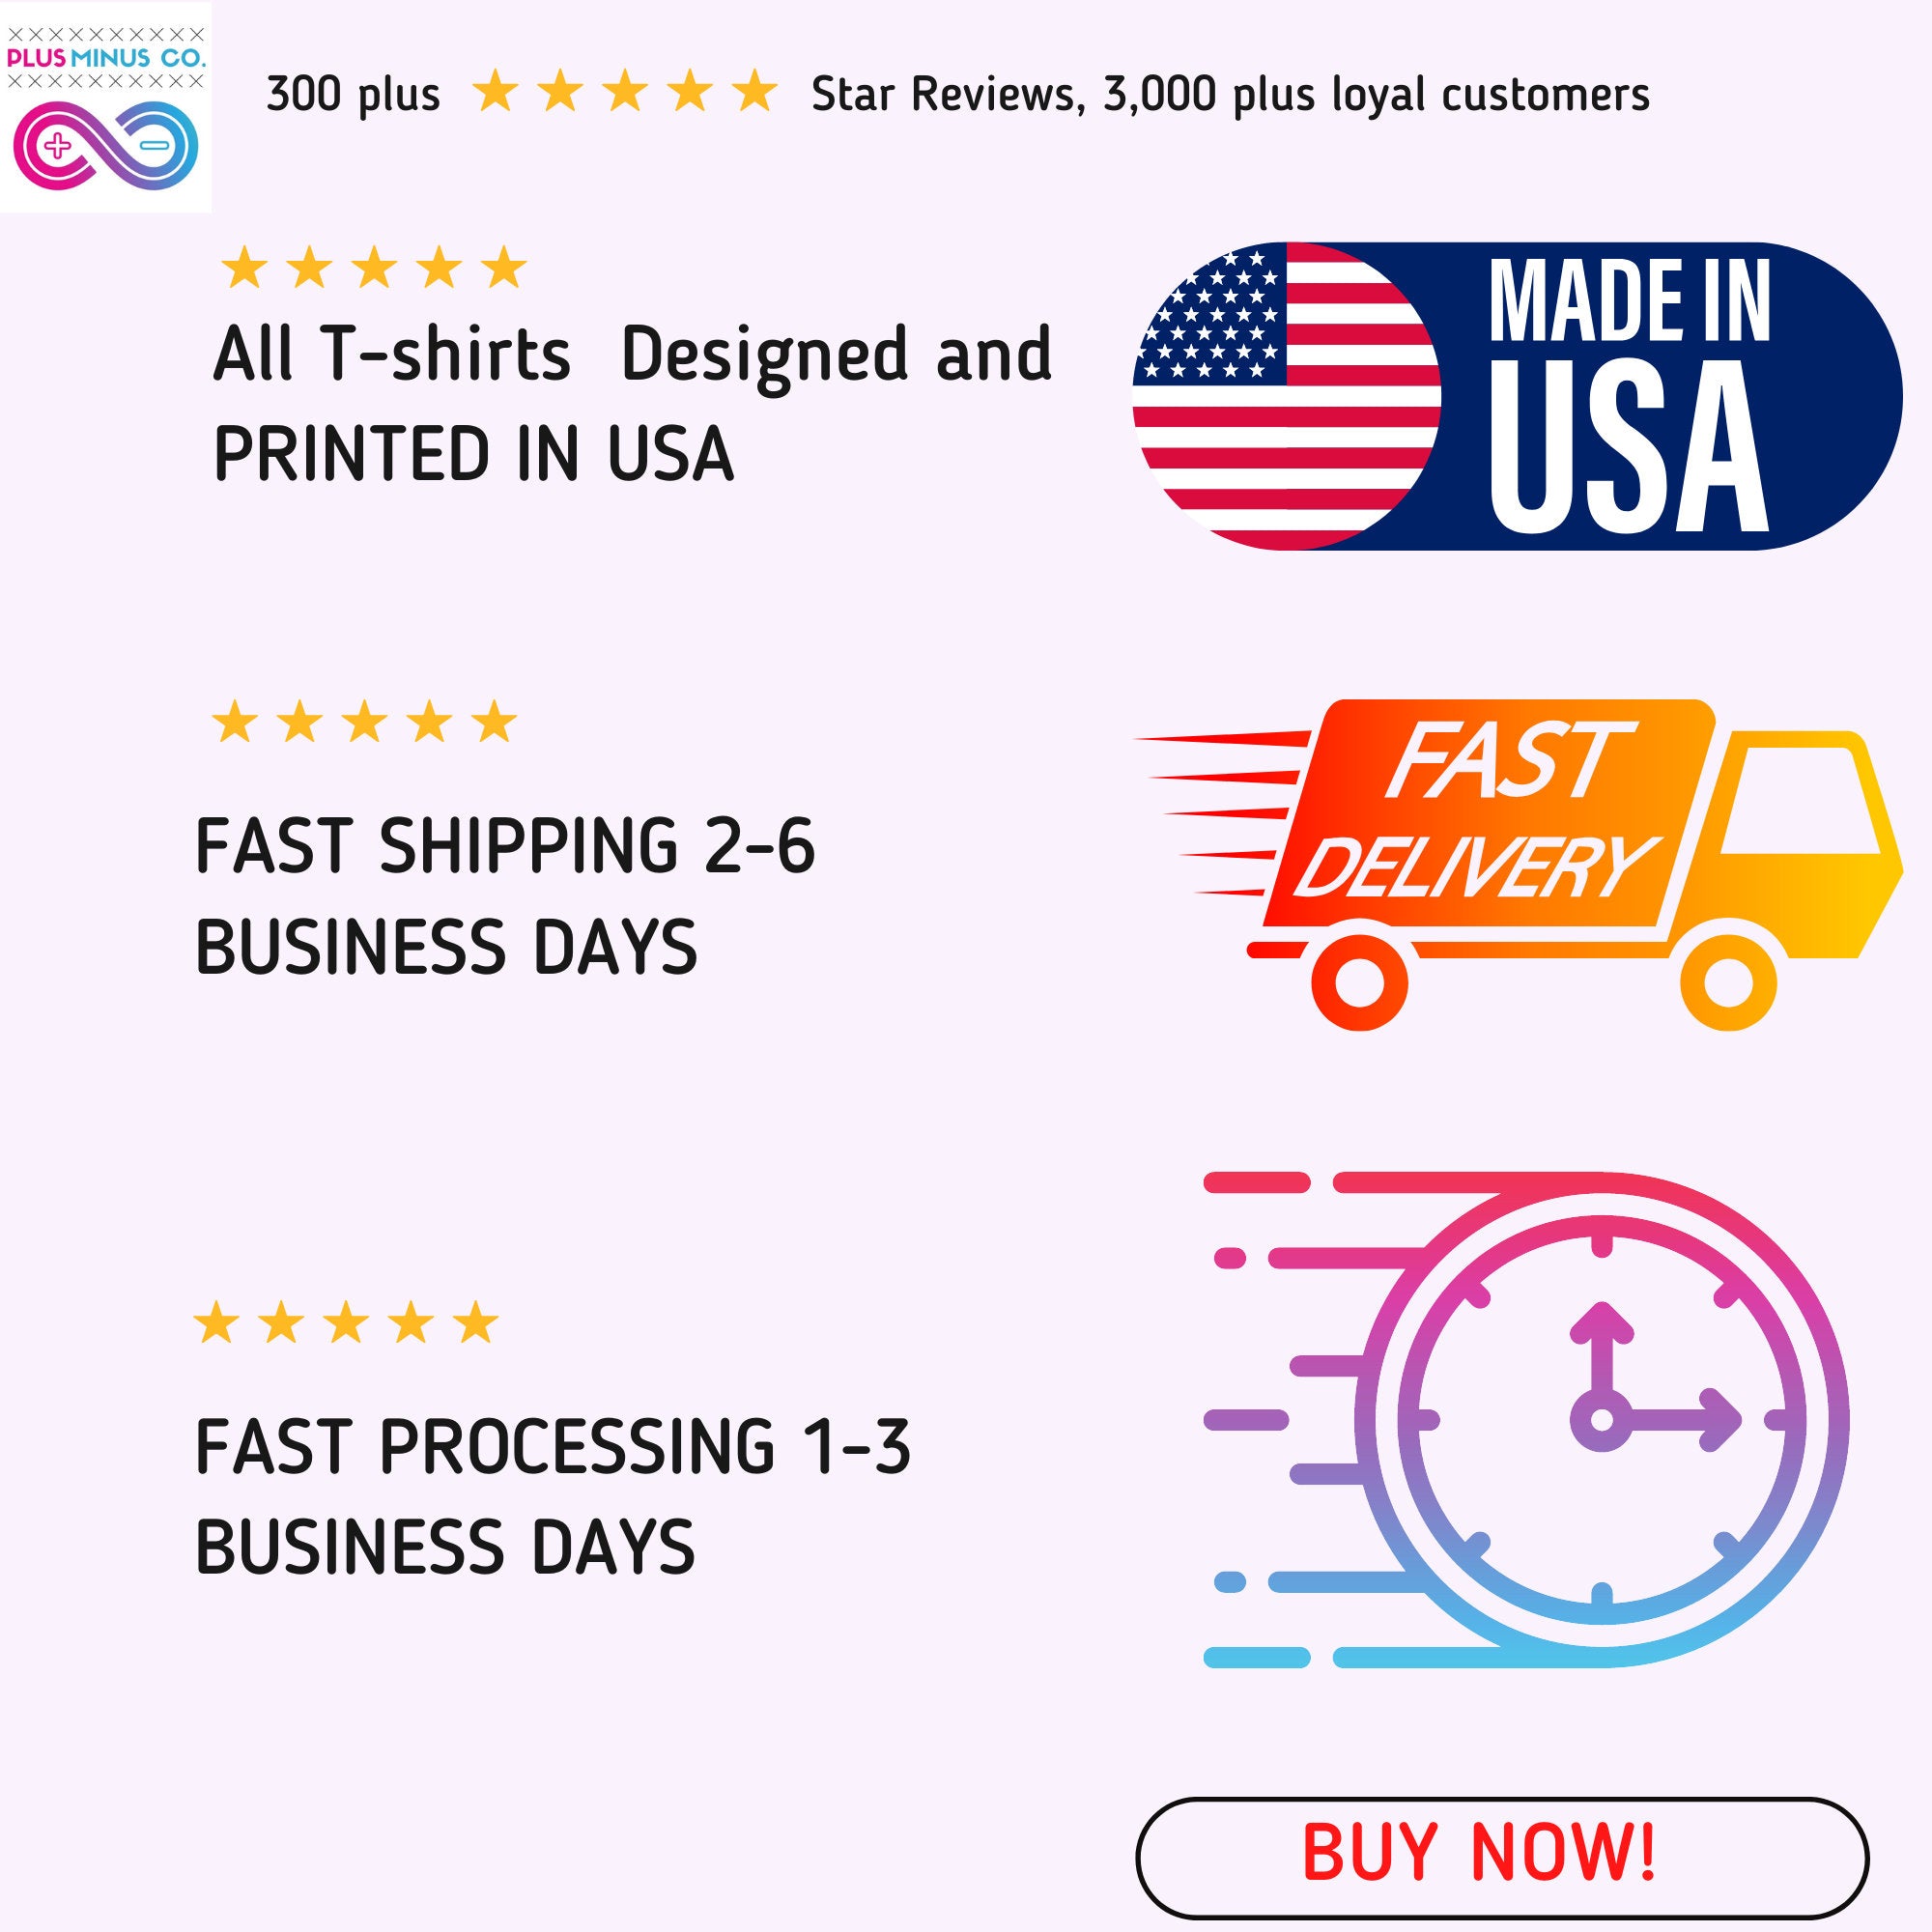 Imprima y gaste | Camisetas estampadas multicolor - plusminusco.com